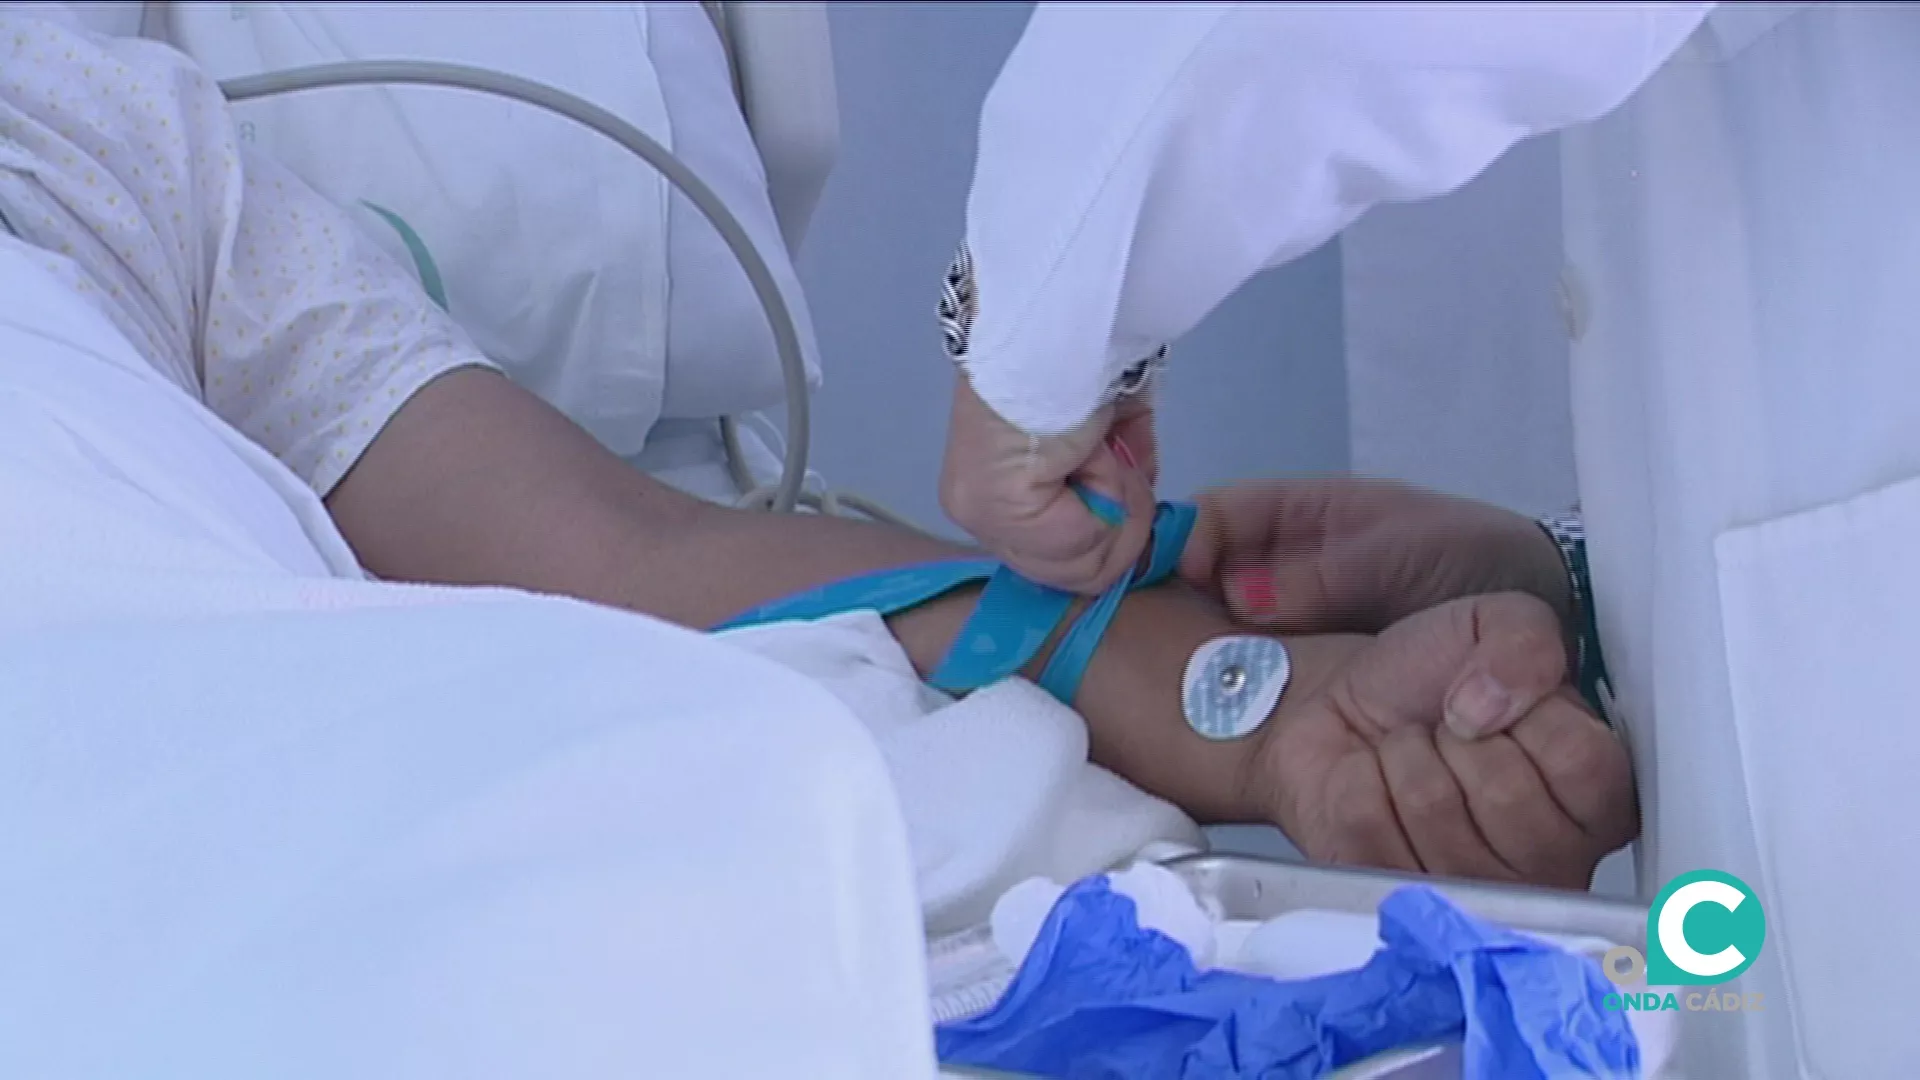 SATSE alerta de la falta de enfermeros en el hospital Puerta del Mar